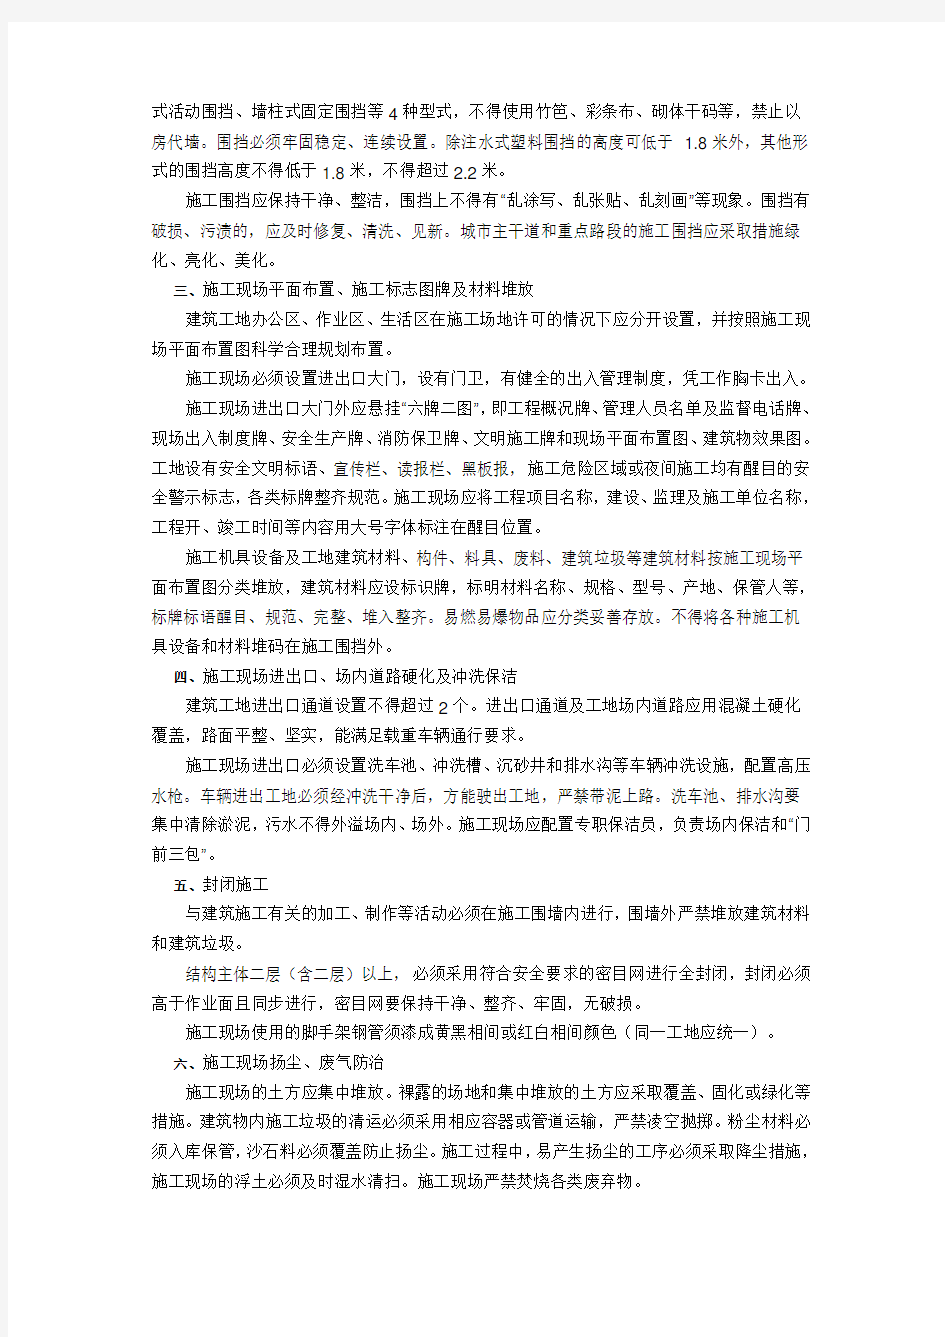 重庆市建设委员会关于印发《重庆市房屋建筑和市政基础设施工程现场文明施工标准》(渝建发[2008]169号)